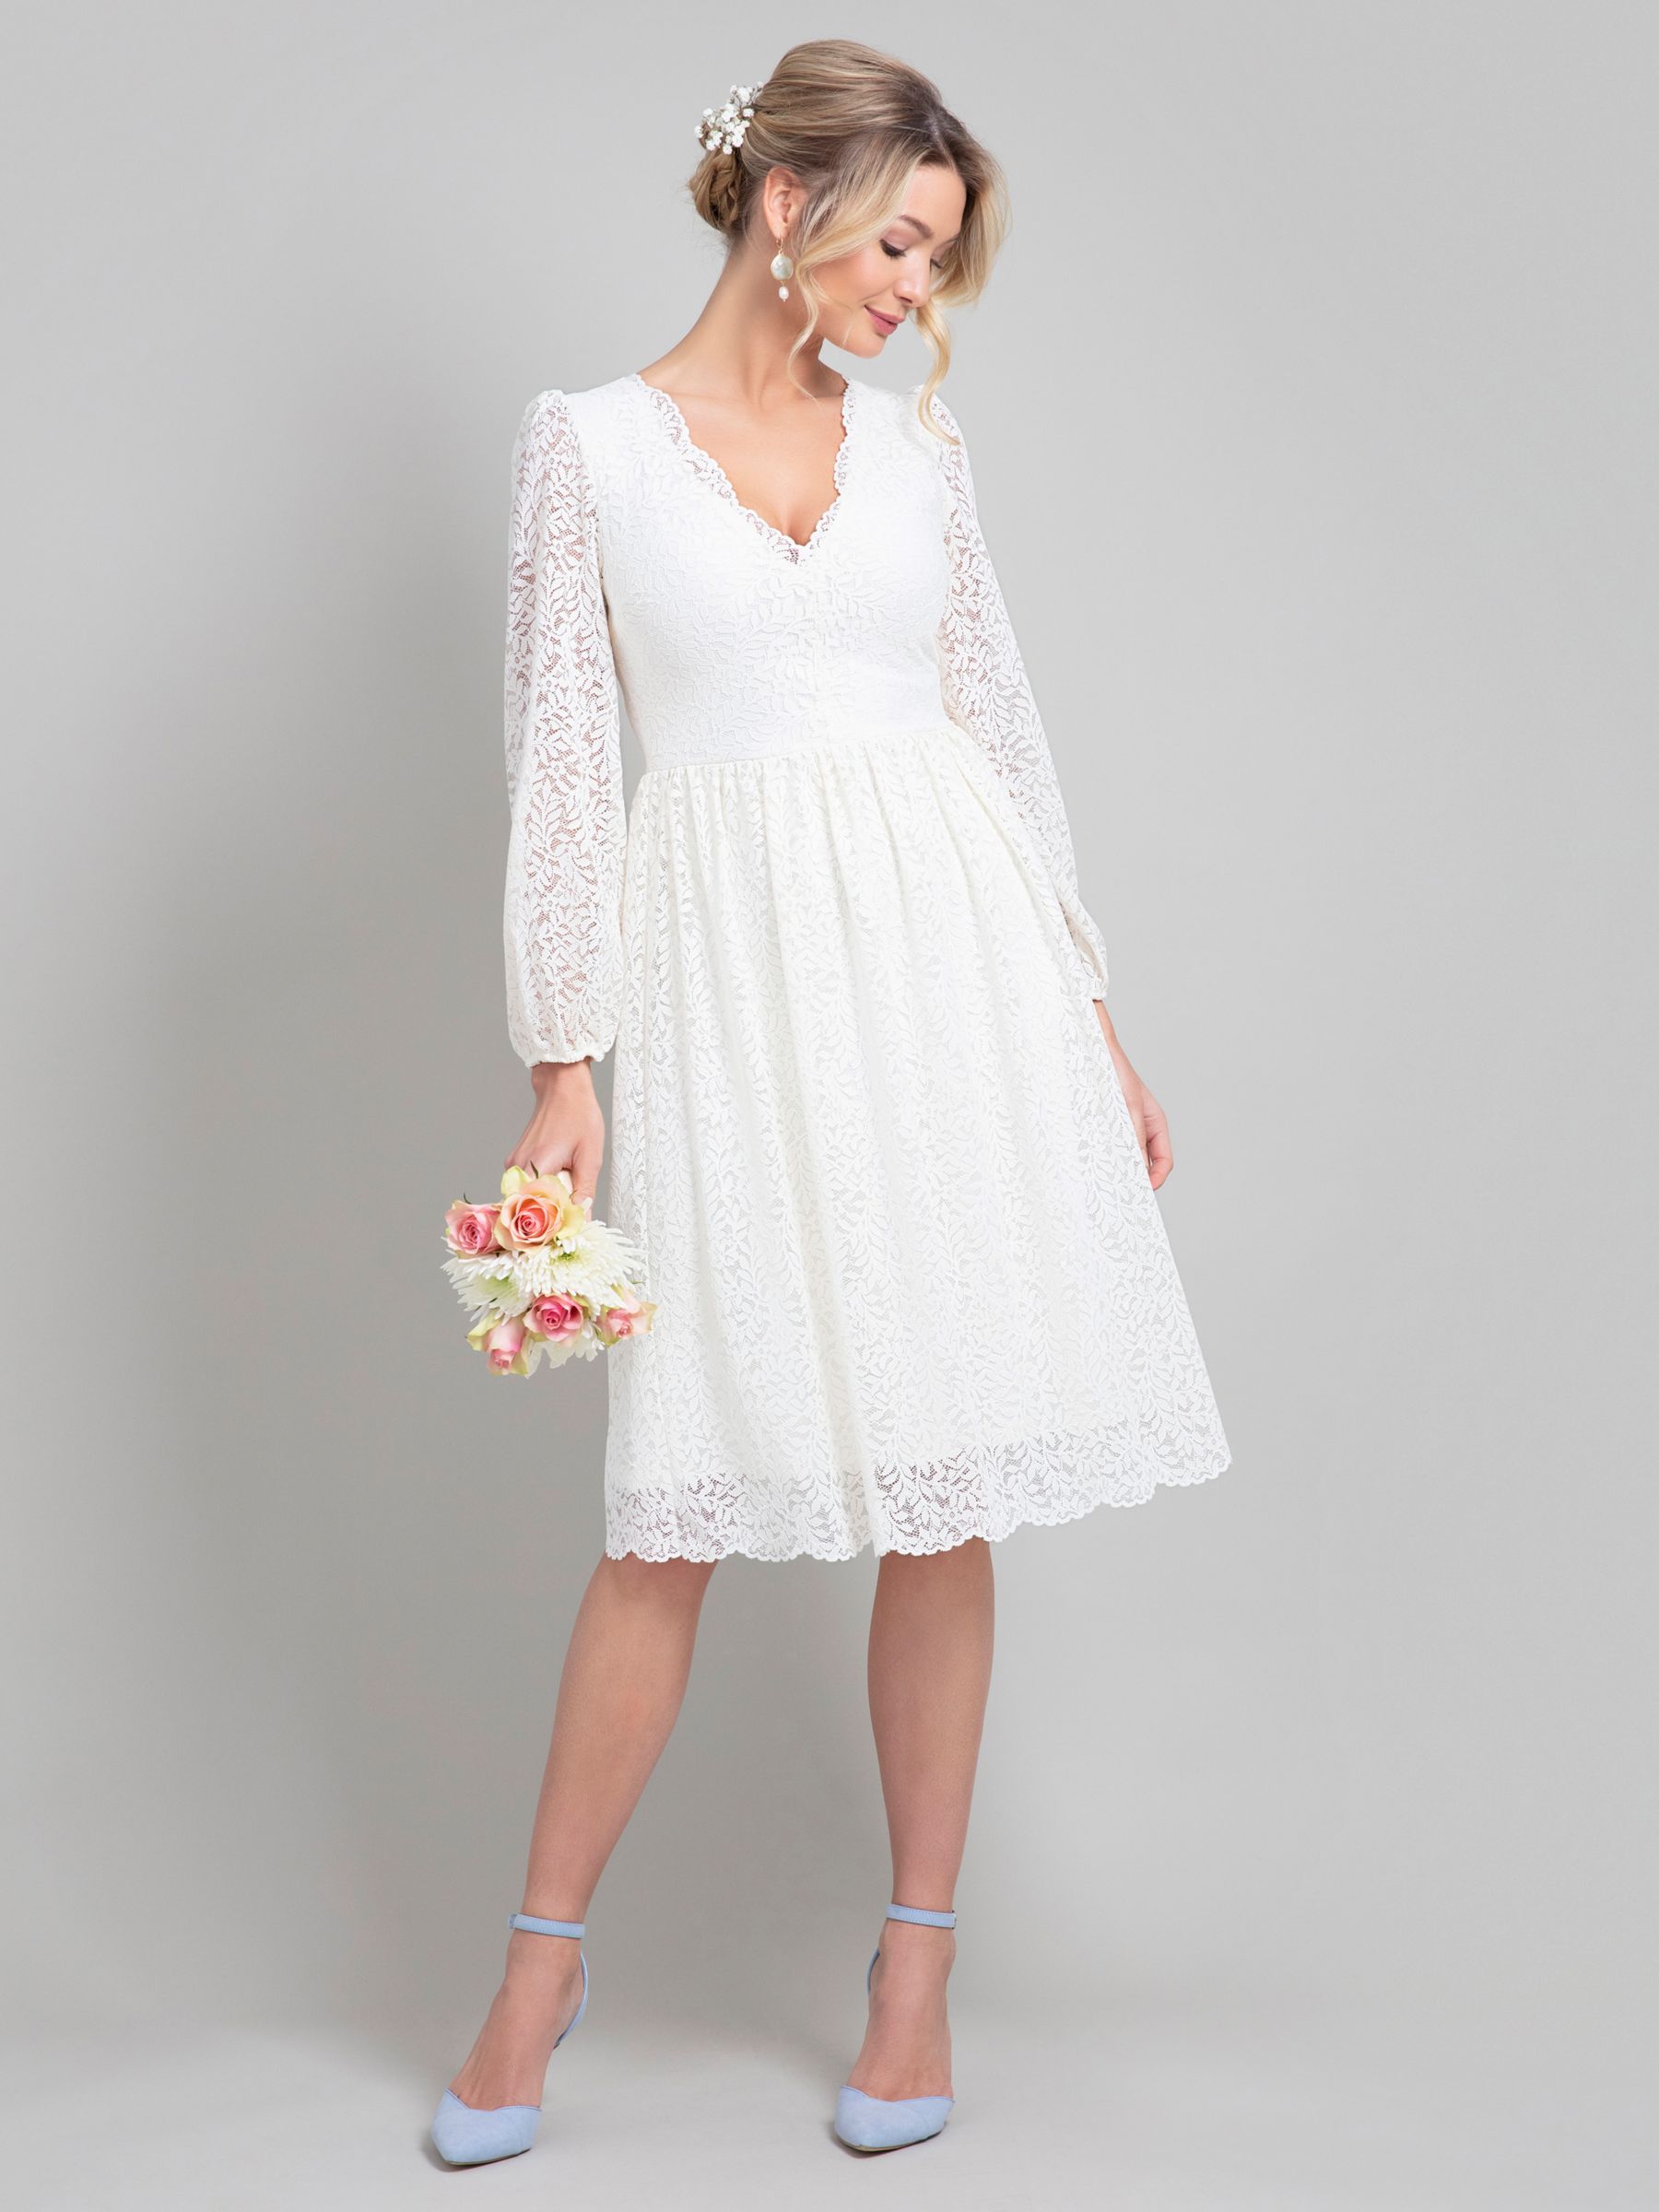 Alie Street Lauren Lace Wedding Dress, Ivory, 14-16